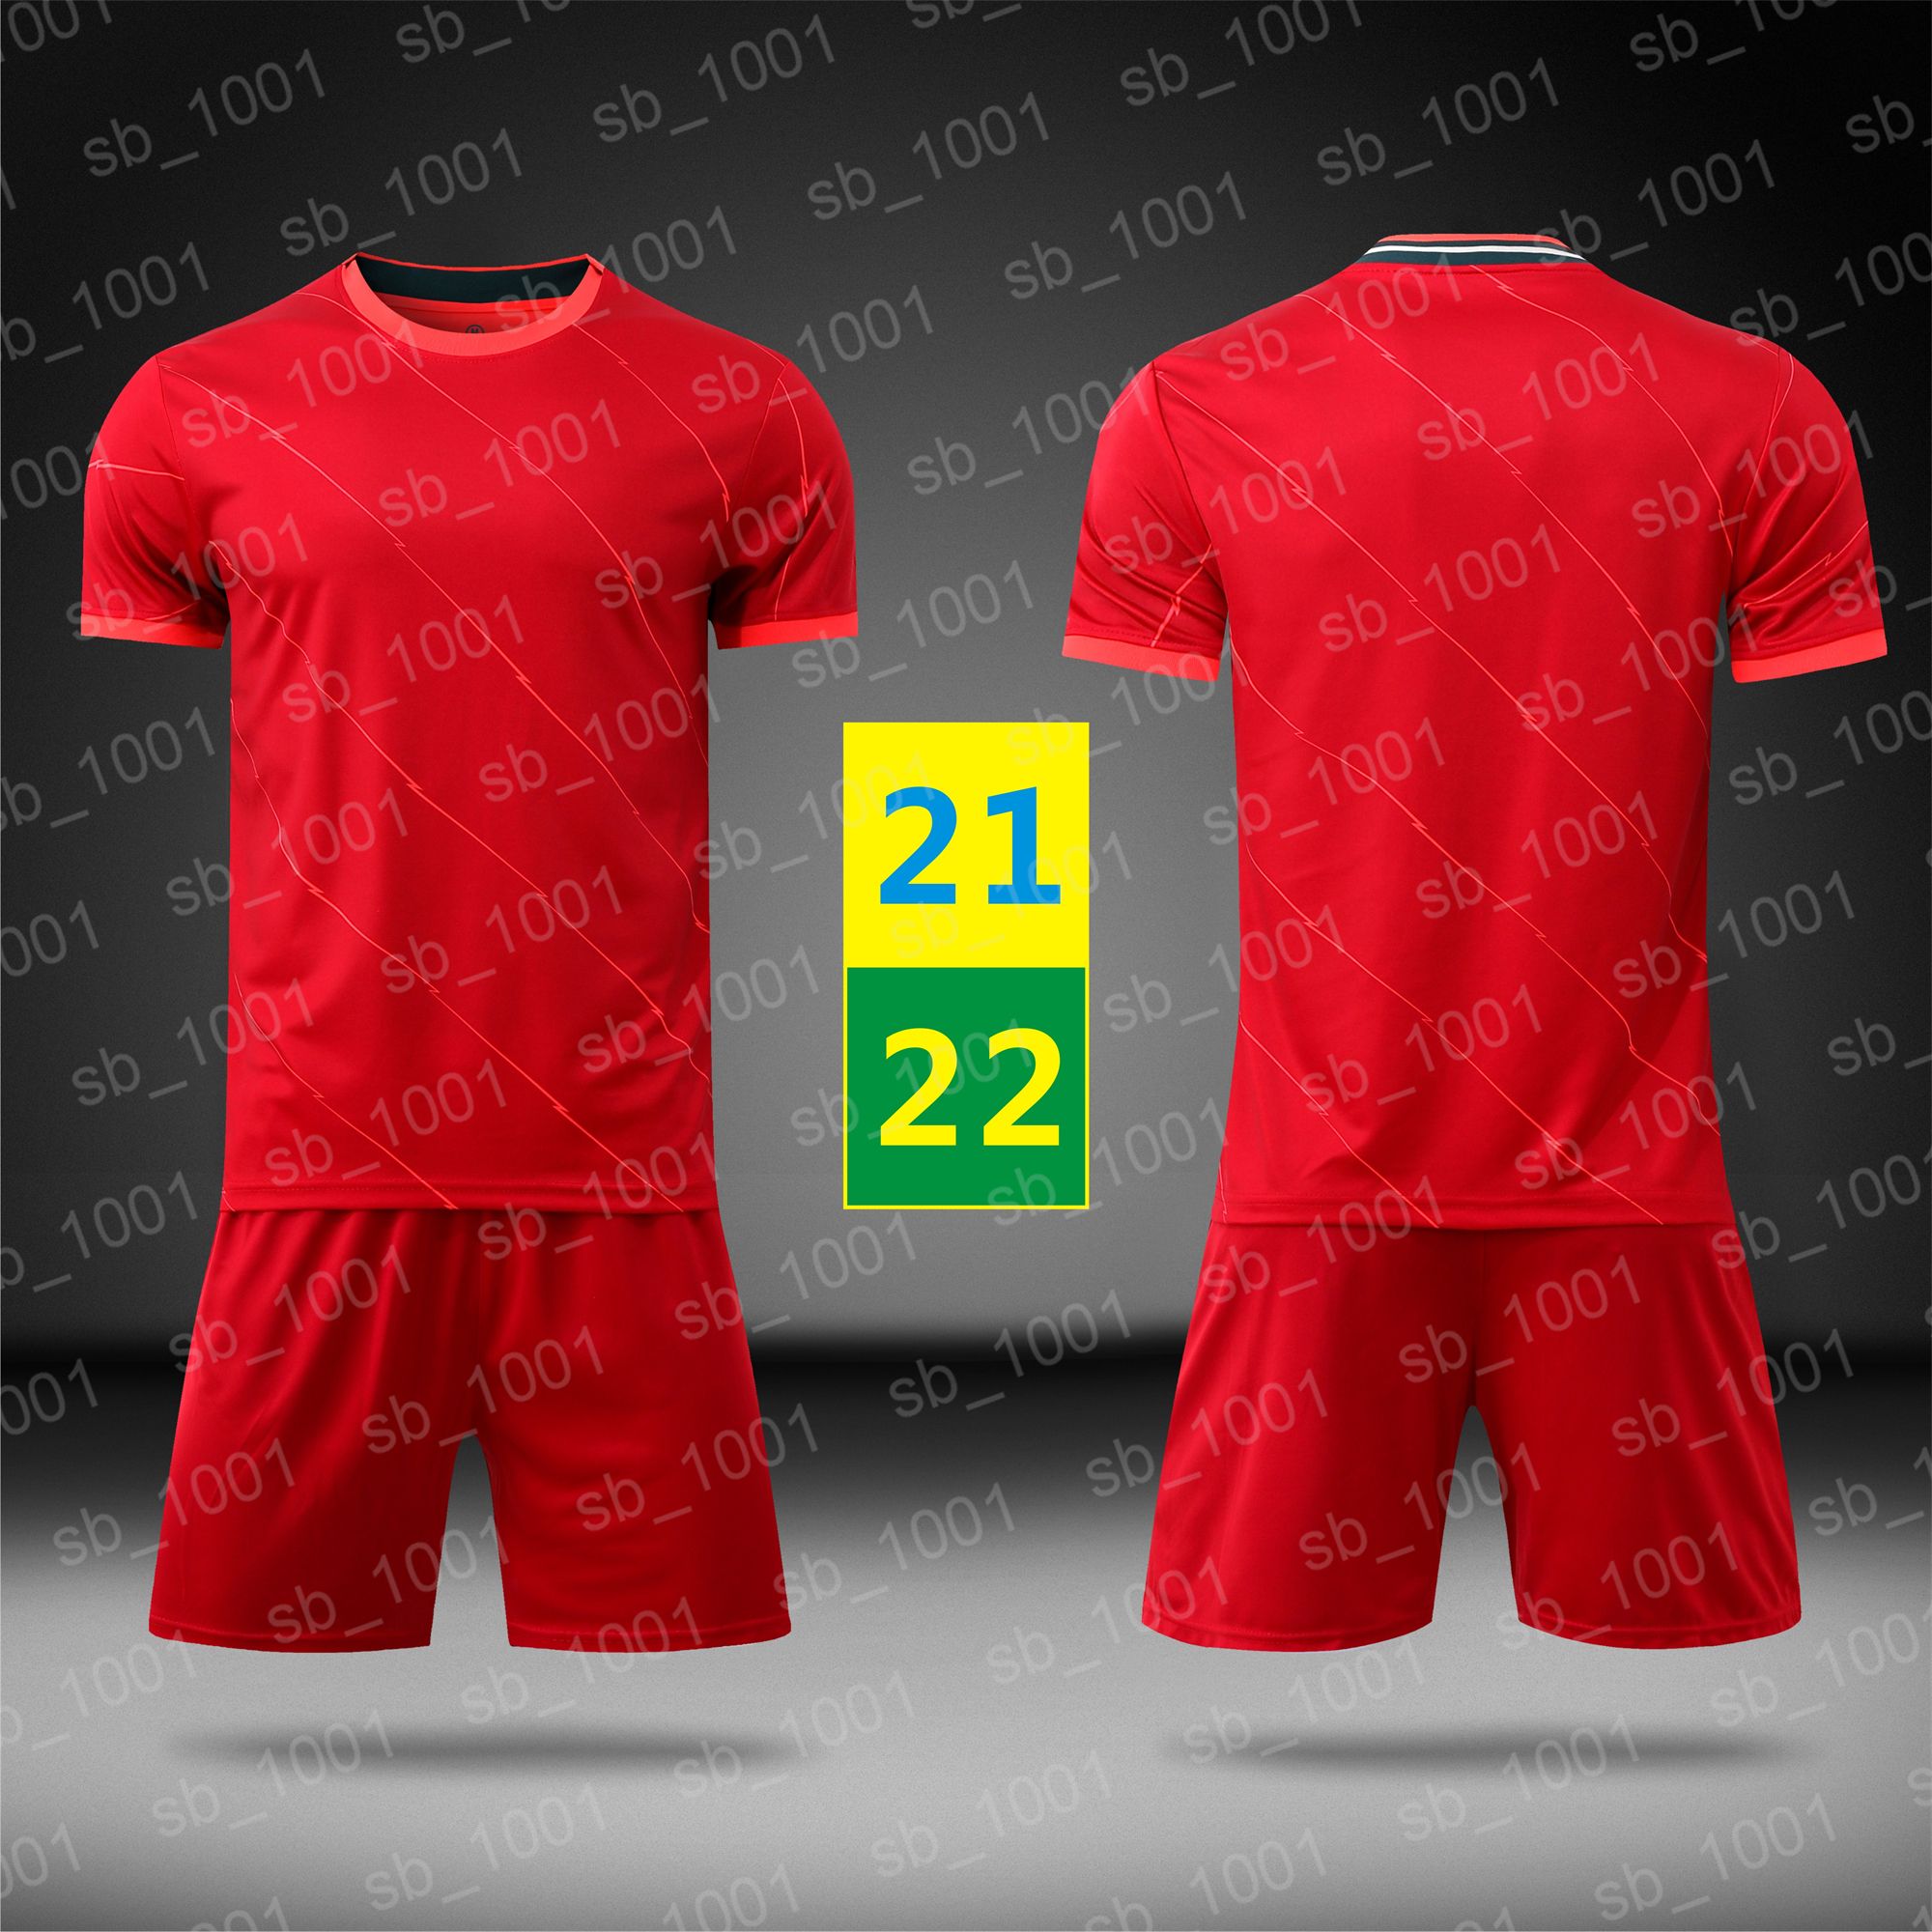 US 21 22 Koszulki piłki nożnej Piłka nożna Szybki Suchy Czerwony Krótki Rękaw Home Jersey Mens Sport Running Kids Mundury Dzieci Training T Shirt 2021 2022 Z LOGO # LWPZ-21B1